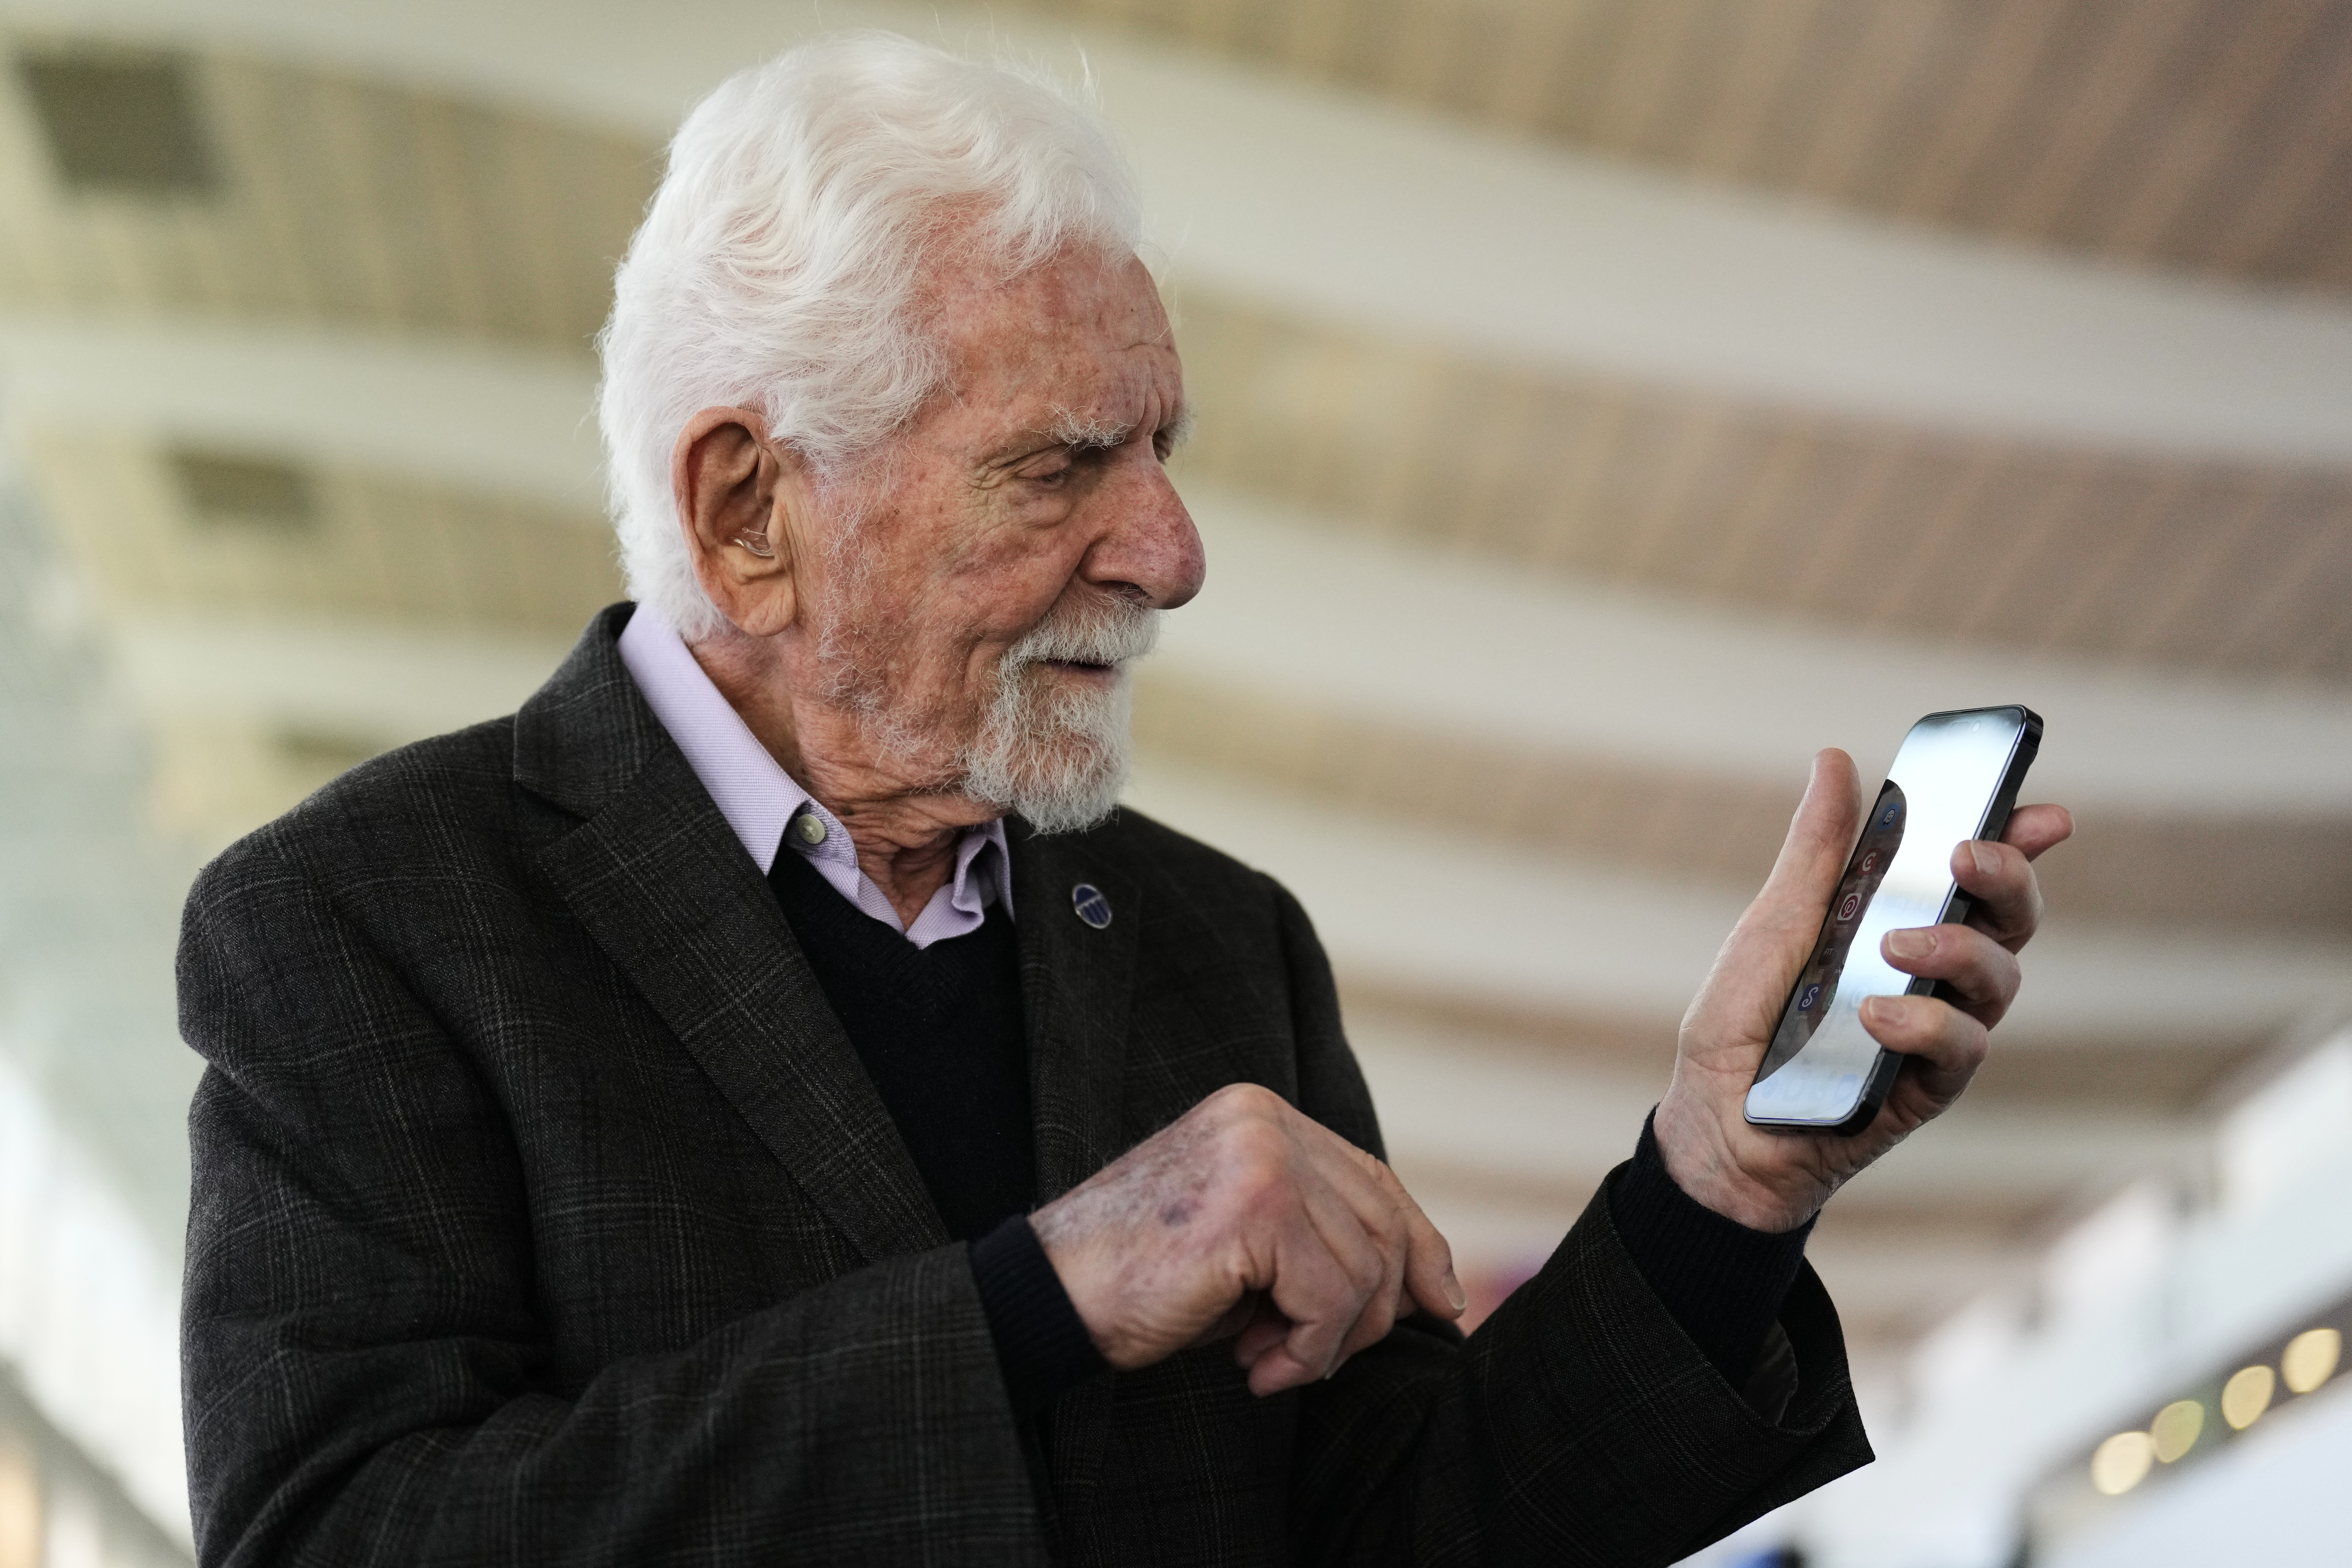 Martin Cooper: "El móvil es una extensión de la persona. Y es solo el inicio"